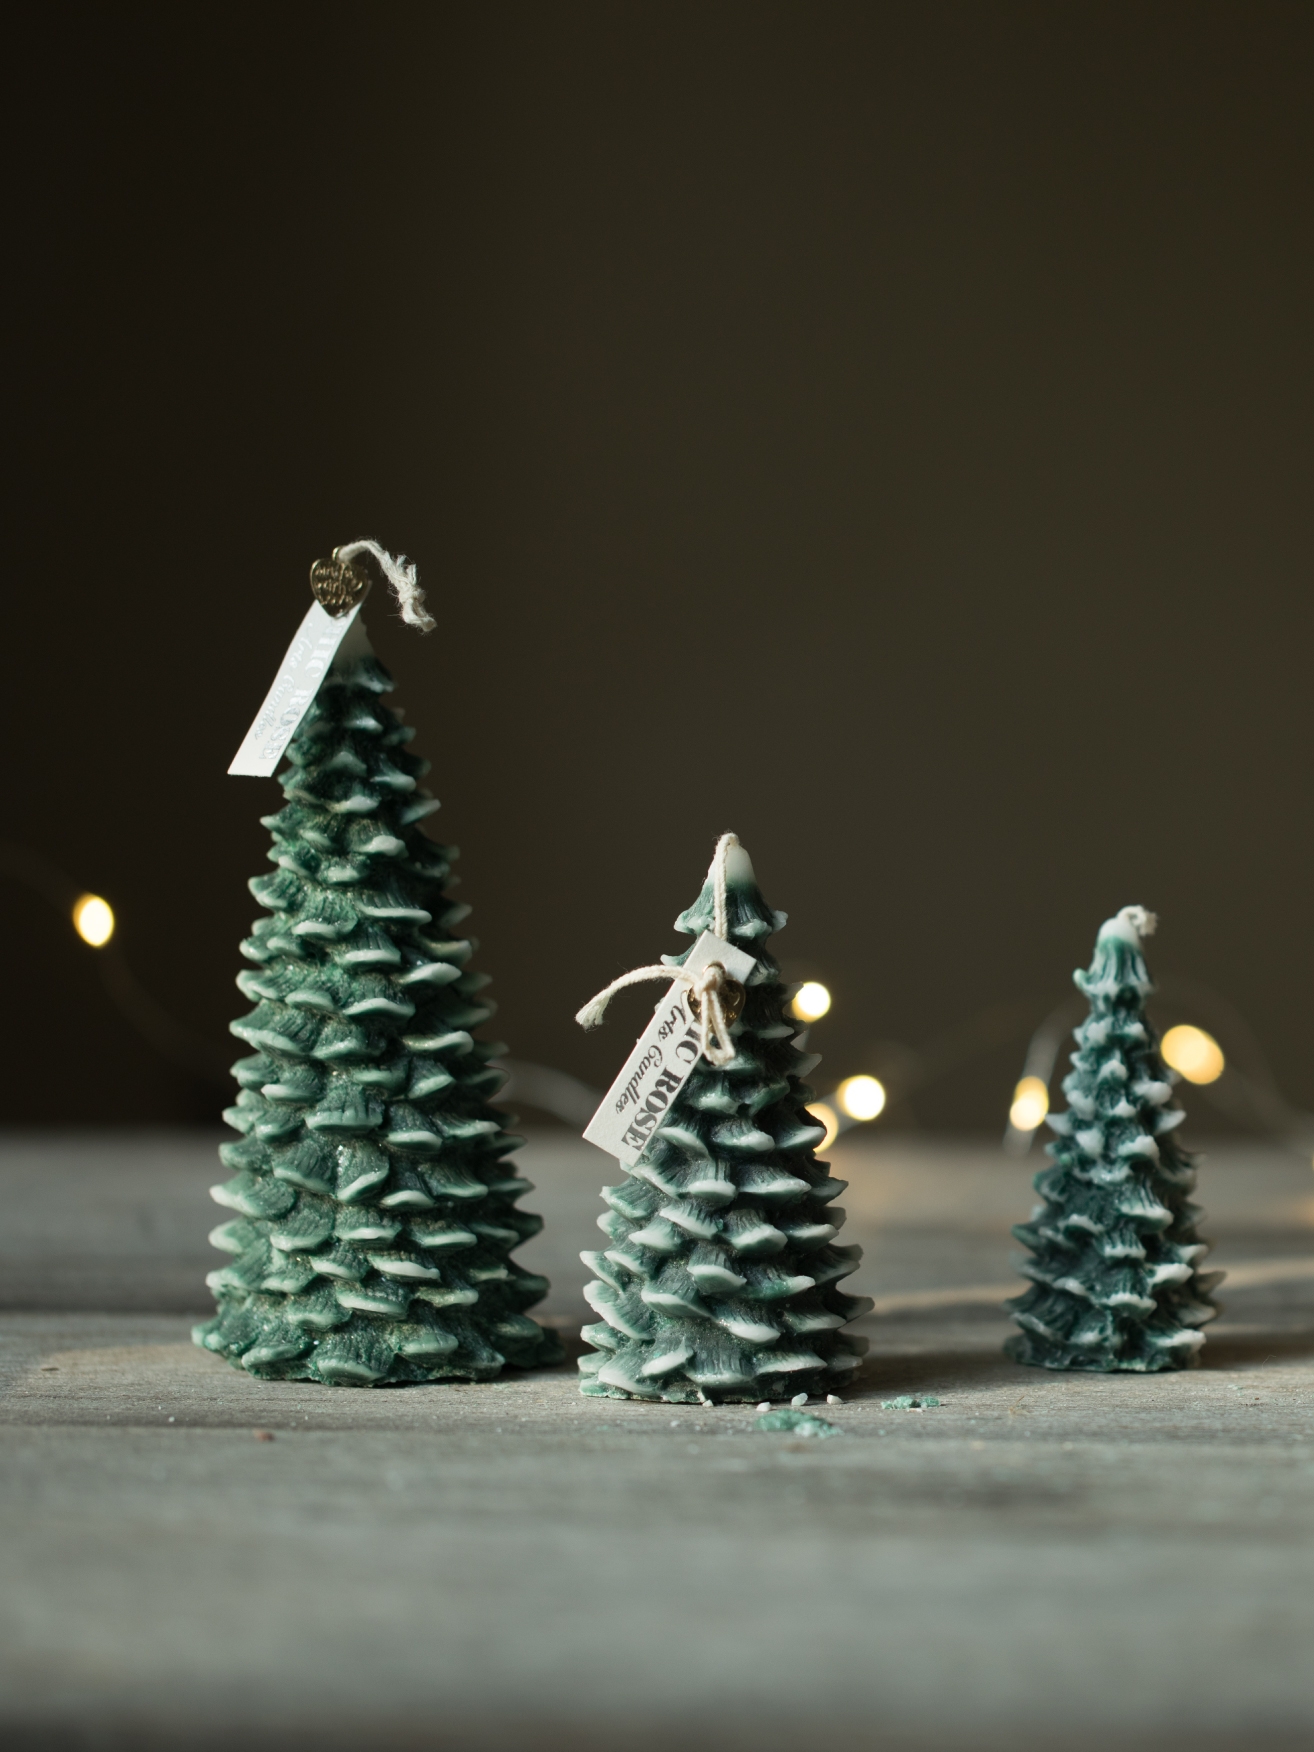 聖誕節聖誕樹造型香薰蠟燭節日燭臺裝飾禮品